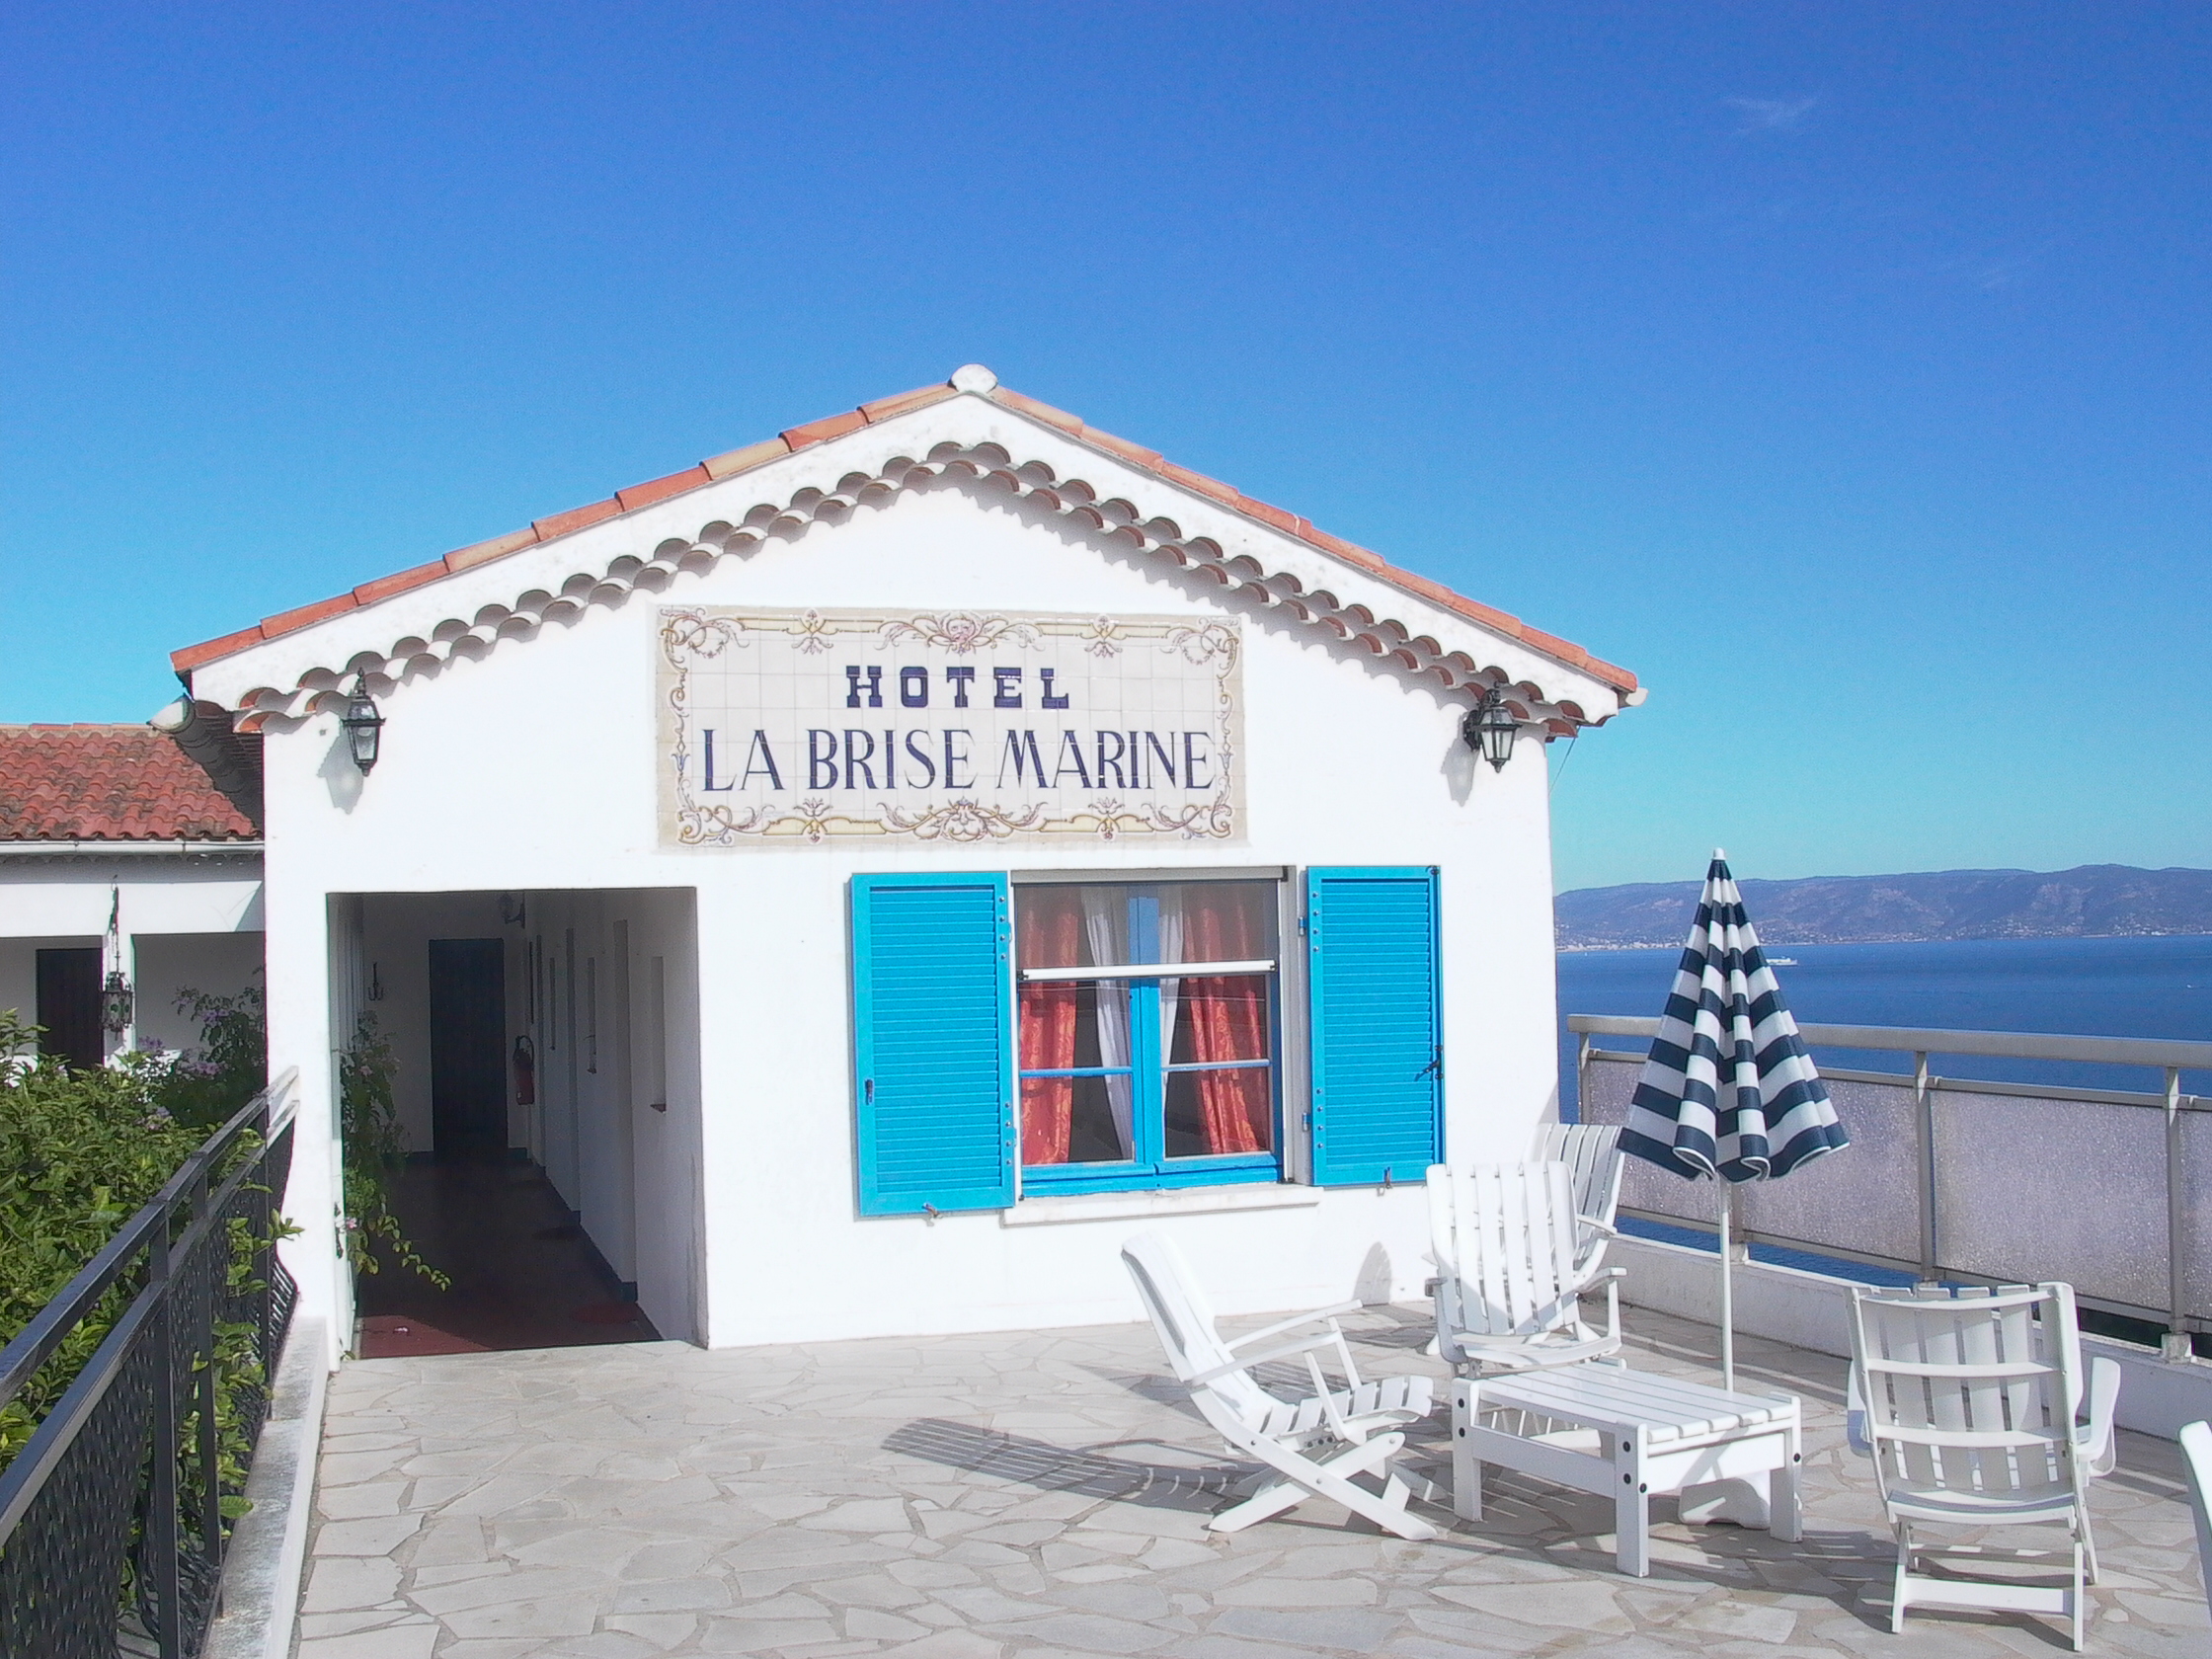 LA BRISE MARINE - Prices & Hotel Reviews (Ile du Levant, France)